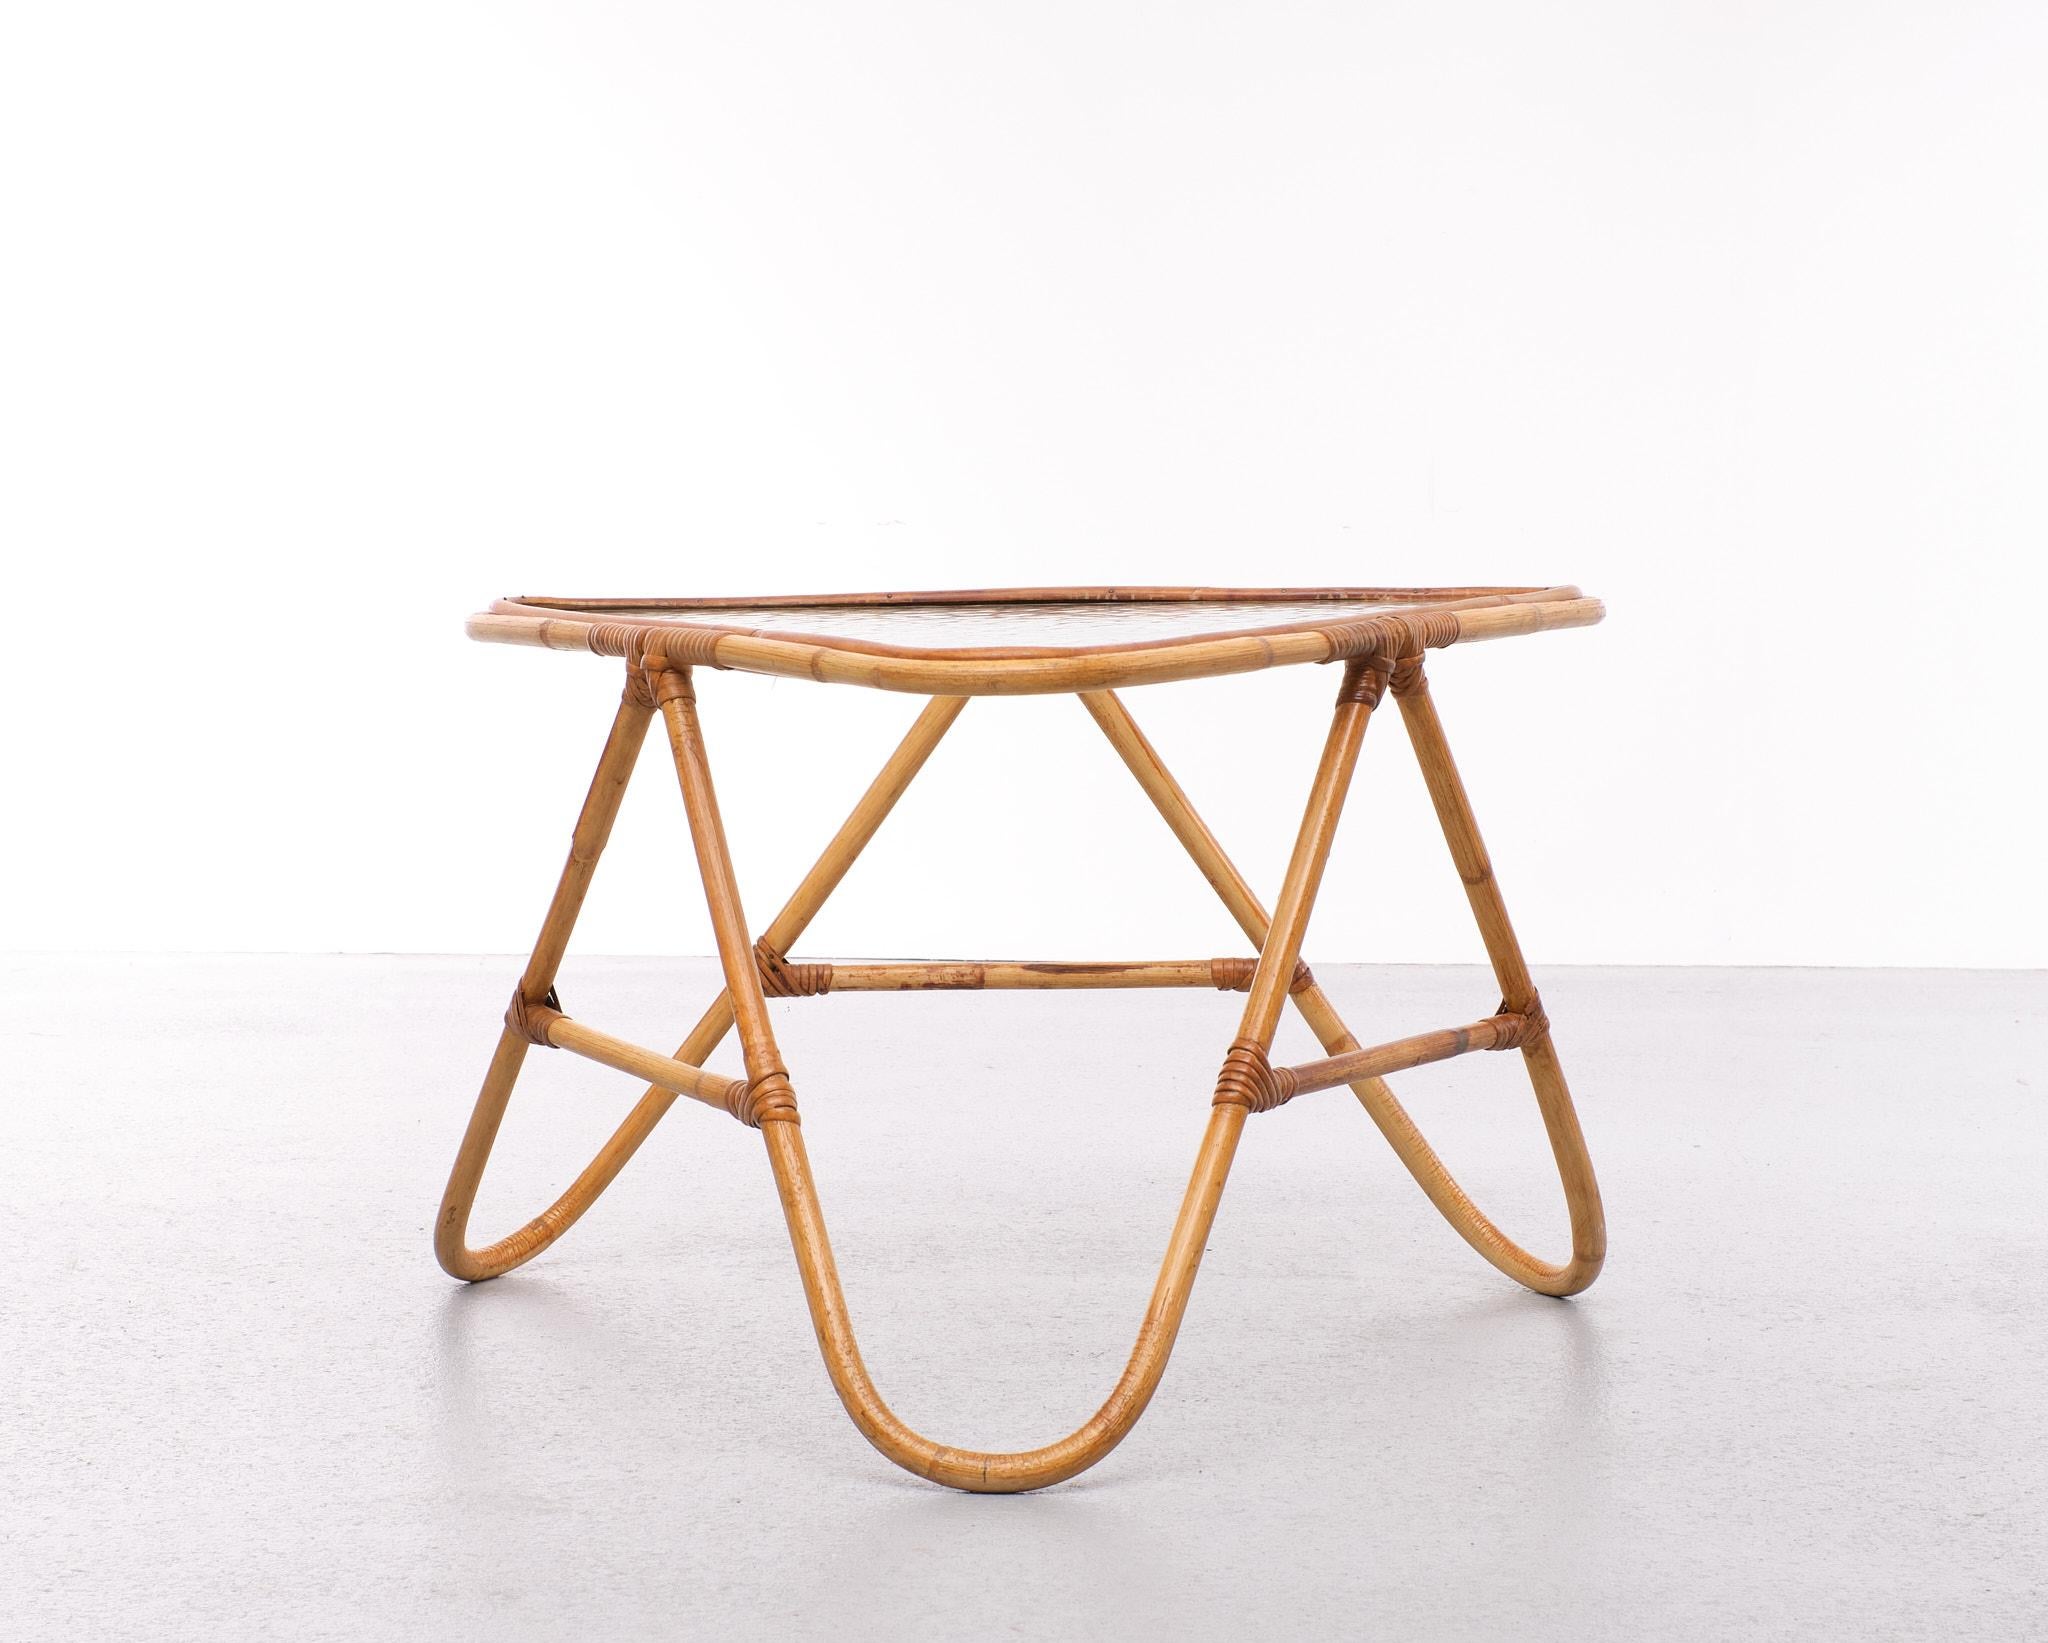 Très belle table basse en forme de triangle. Cadre en osier fait à la main, livré 
avec le plateau en verre ondulé d'origine. Néerlandais des années 1950. Pour l'intérieur et l'extérieur.